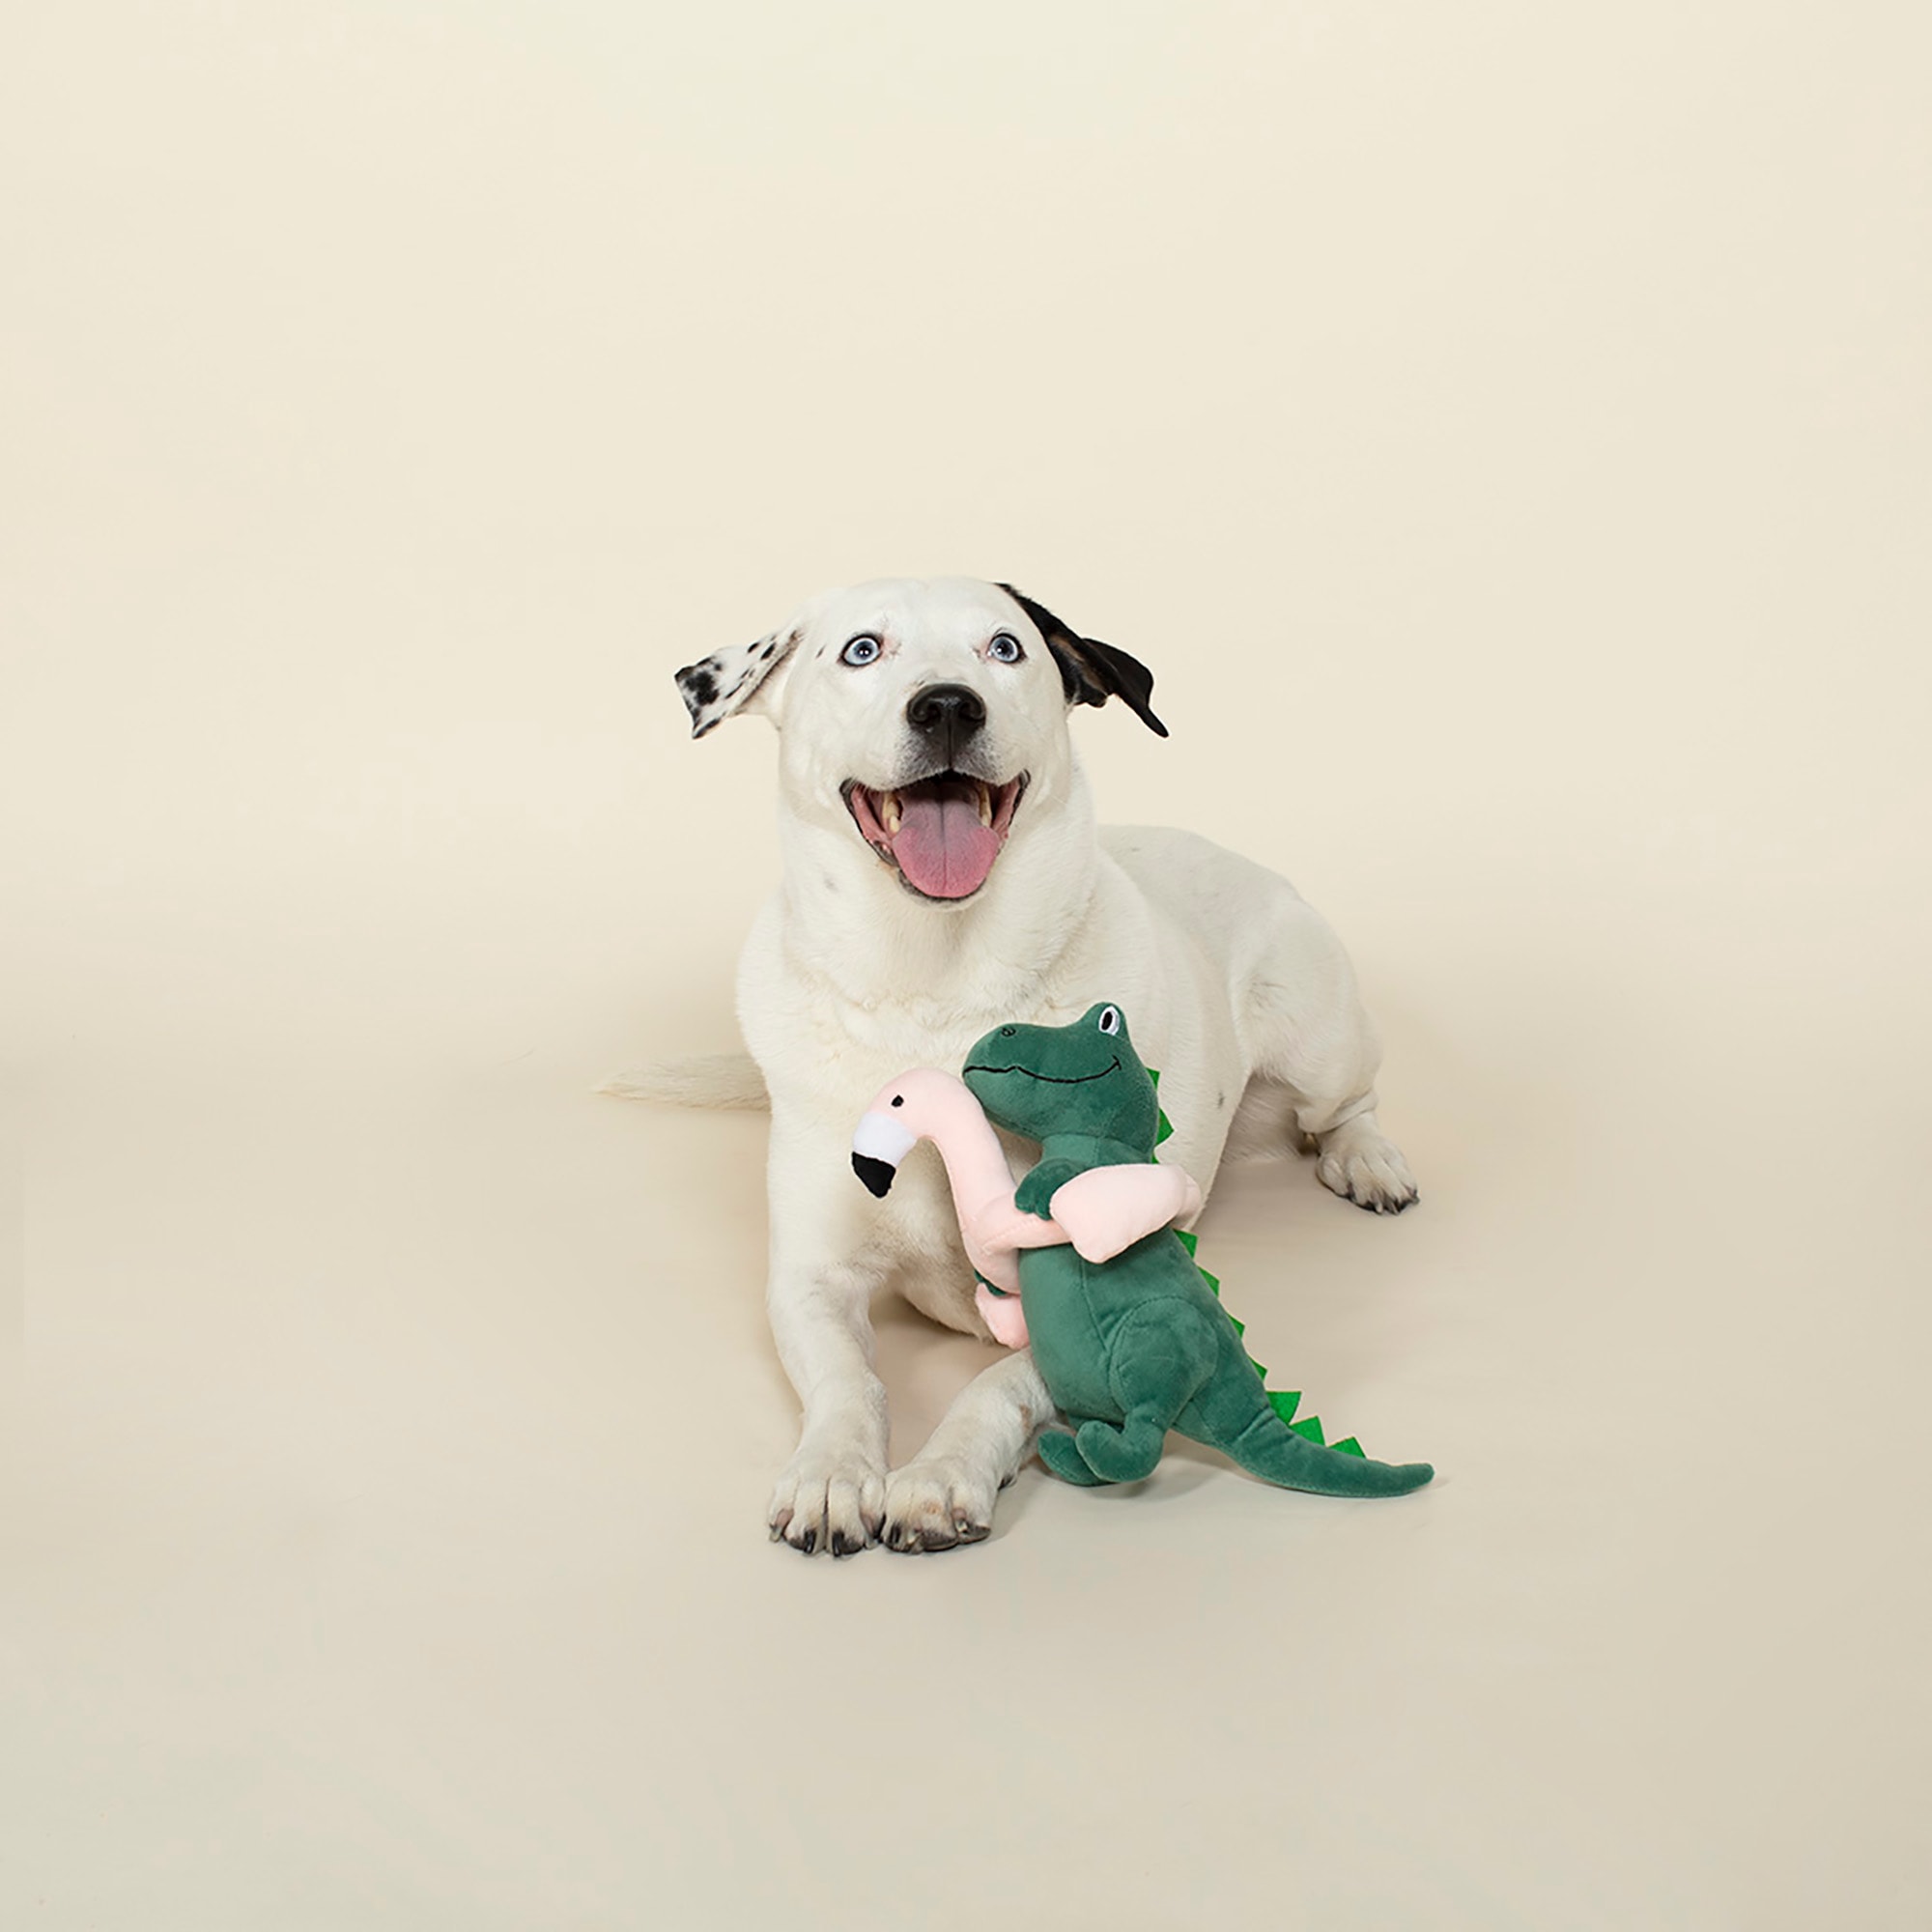 PETSHOP TIME FOR A CHANGE IN WEATHER DOG TOYS – PetShop.fringestudio